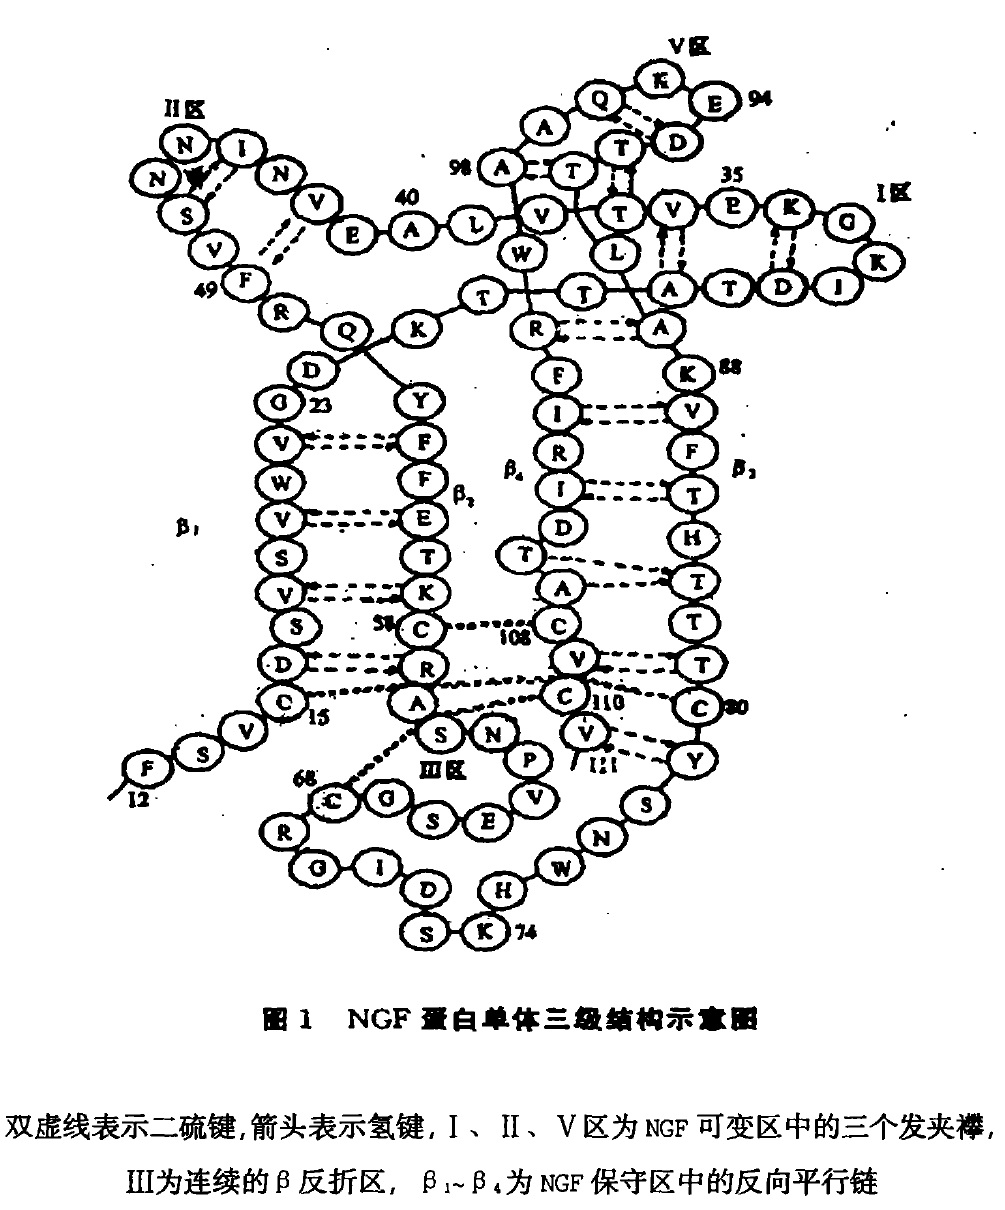 眼鏡蛇毒NGF蛋白單體三級結構